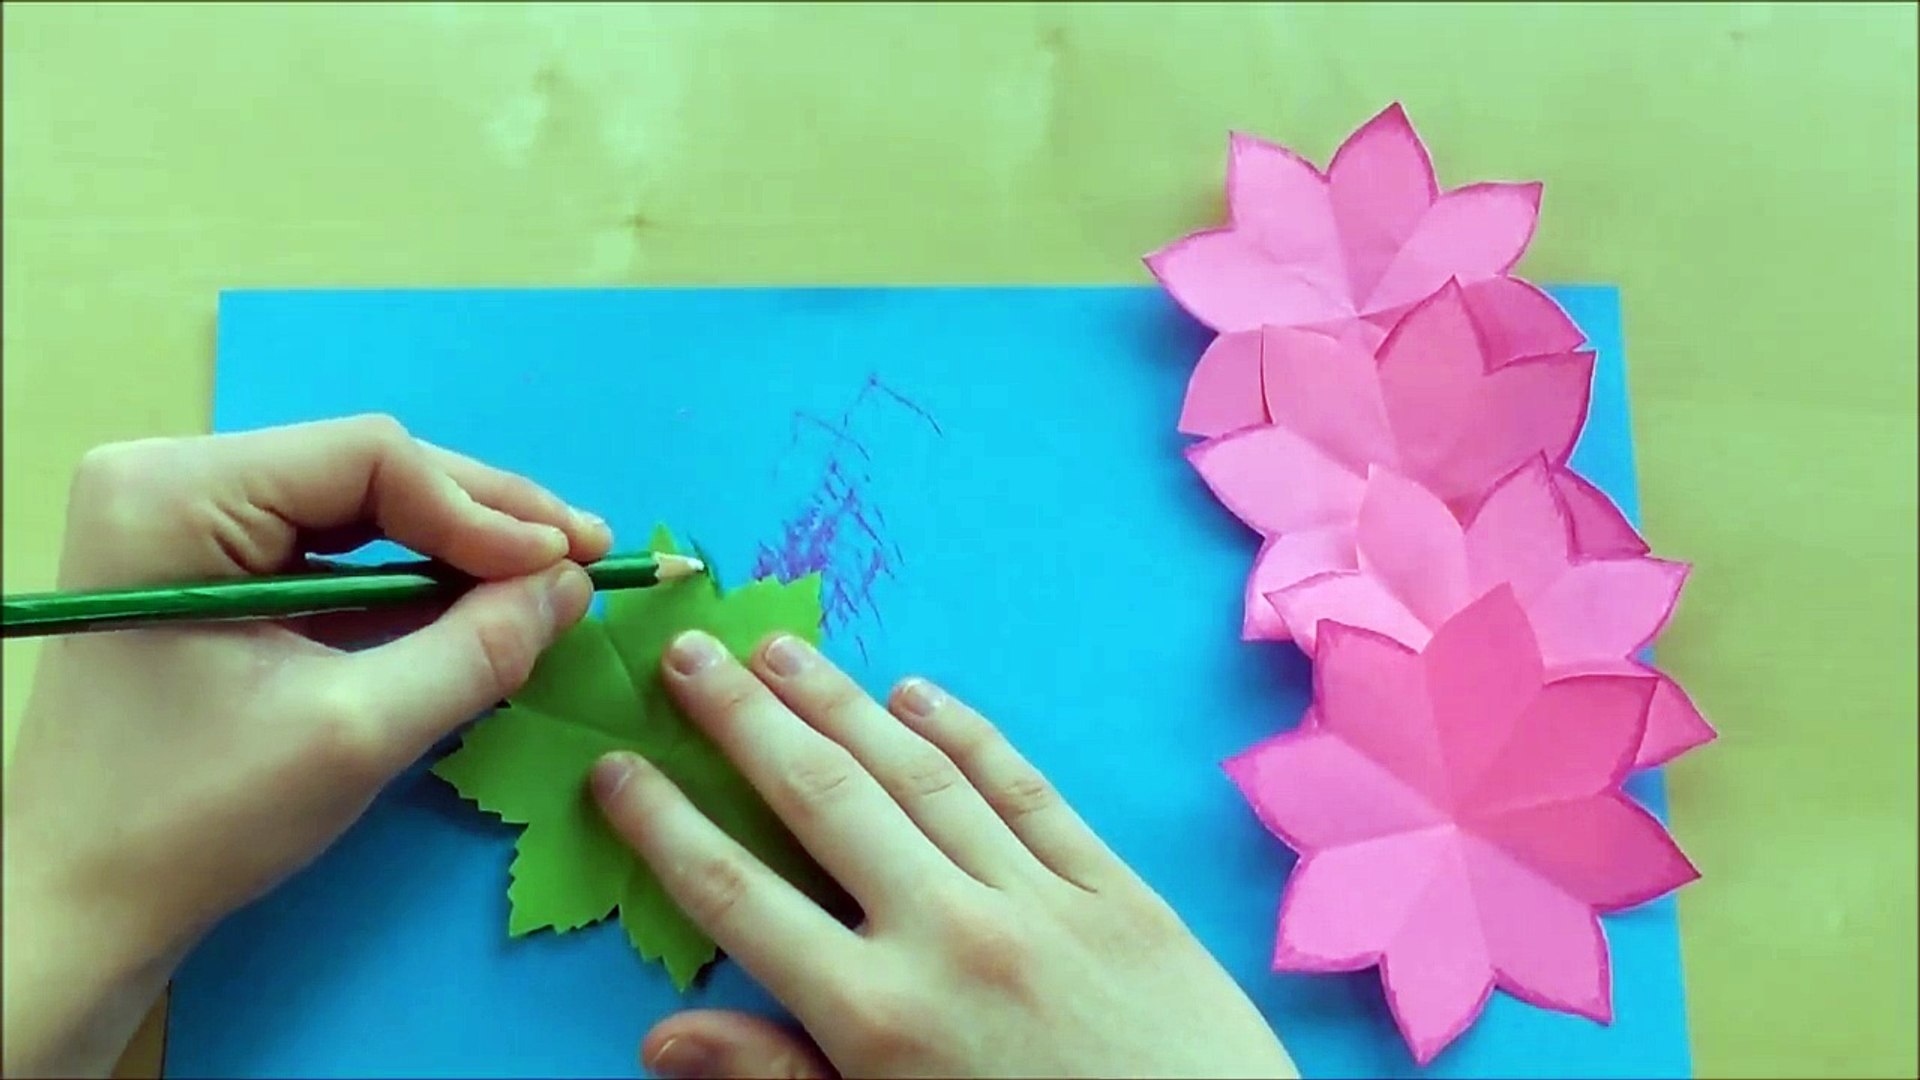 Kağıttan çiçek yapımı - Kağıttan Gül Yapımı - Anneler Günü Hediye Fikirleri  – Видео Dailymotion